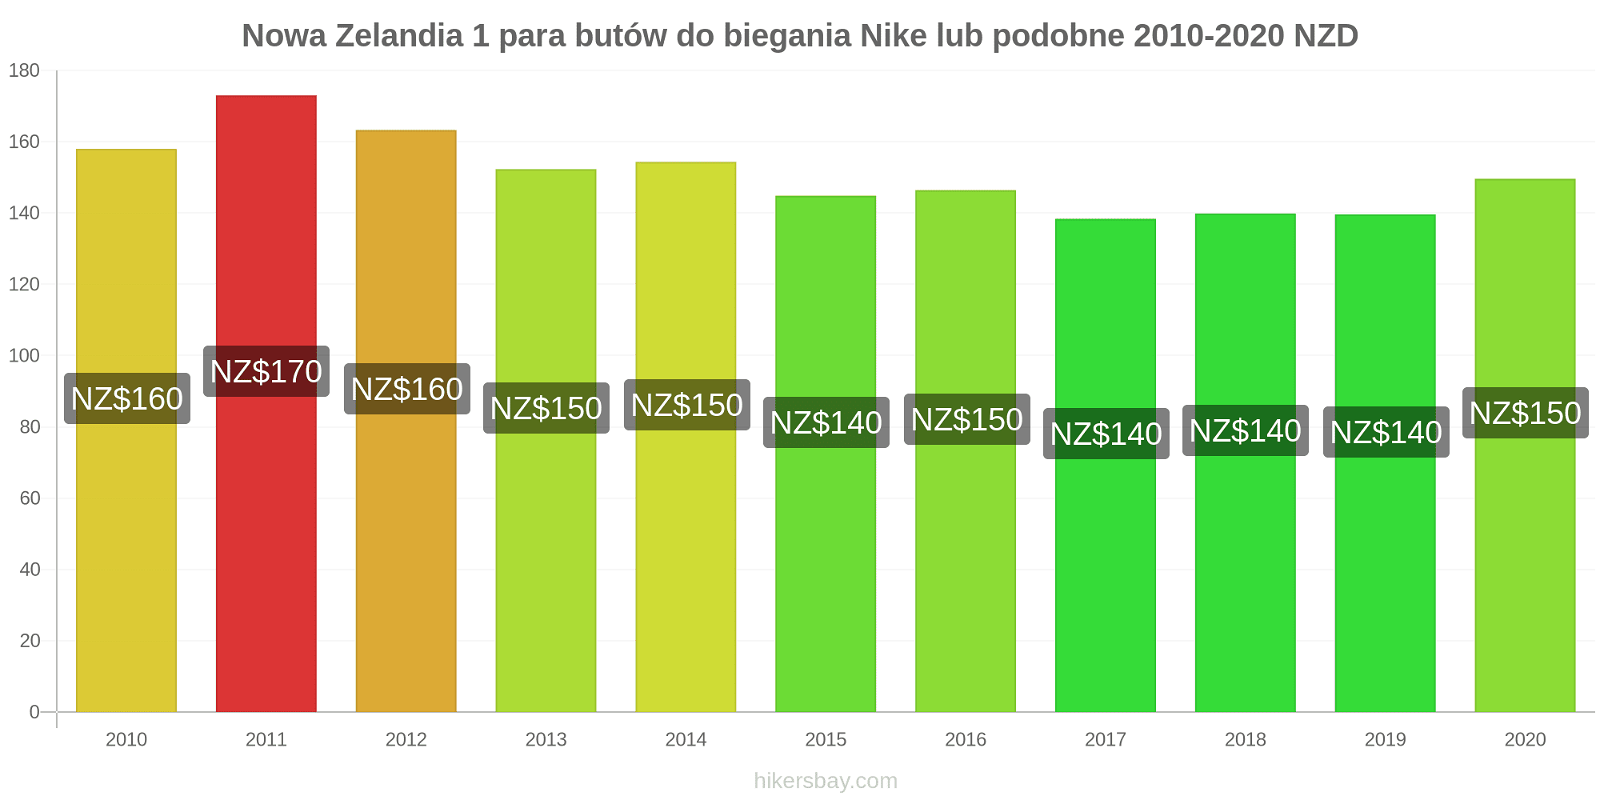 Nowa Zelandia zmiany cen 1 para butów do biegania Nike lub podobne hikersbay.com